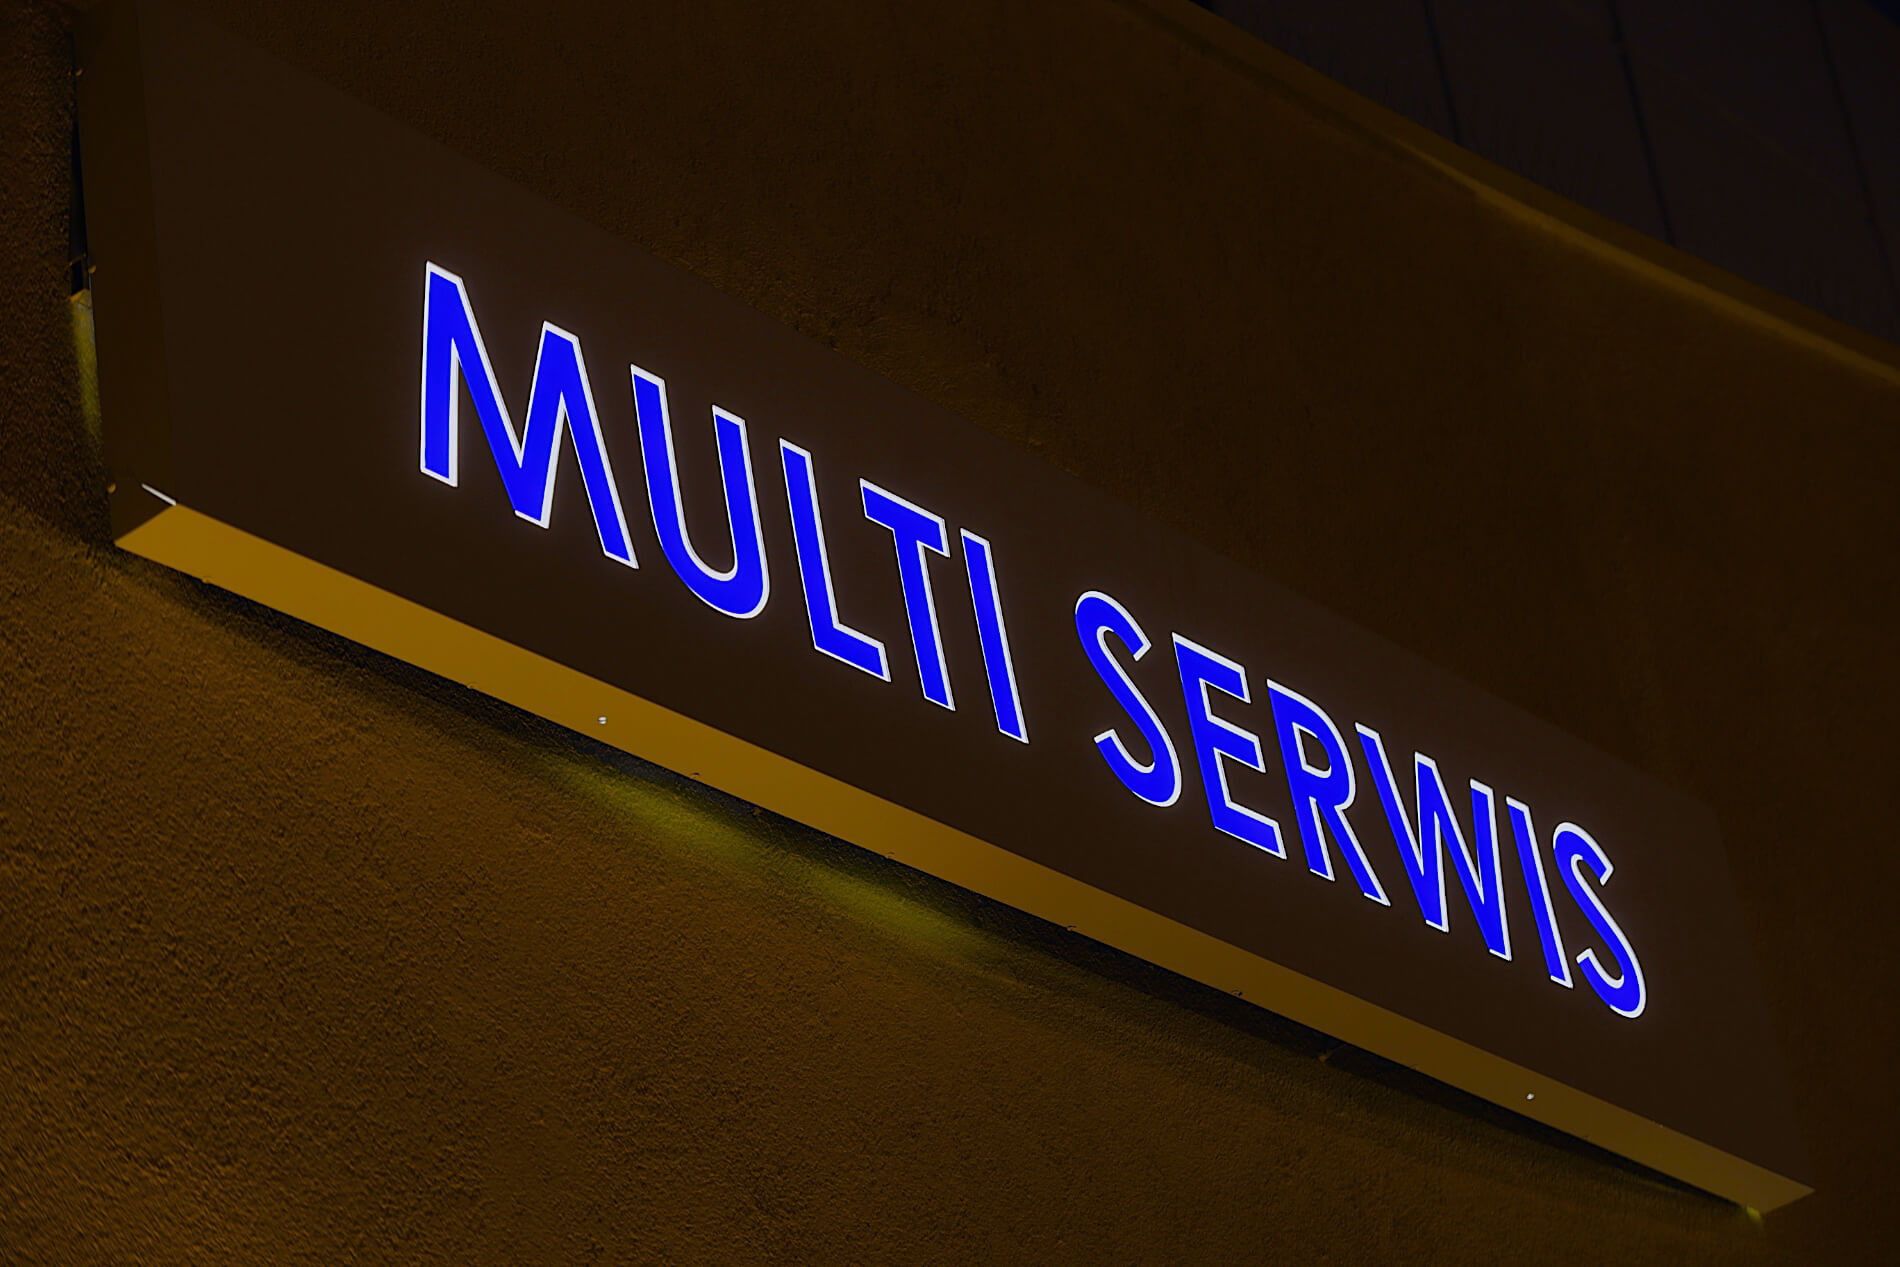 Gajos Dienst - Gajos Serwis - Leuchtkasten mit Firmenname, Buchstaben beleuchtet mit transluzenter Folie